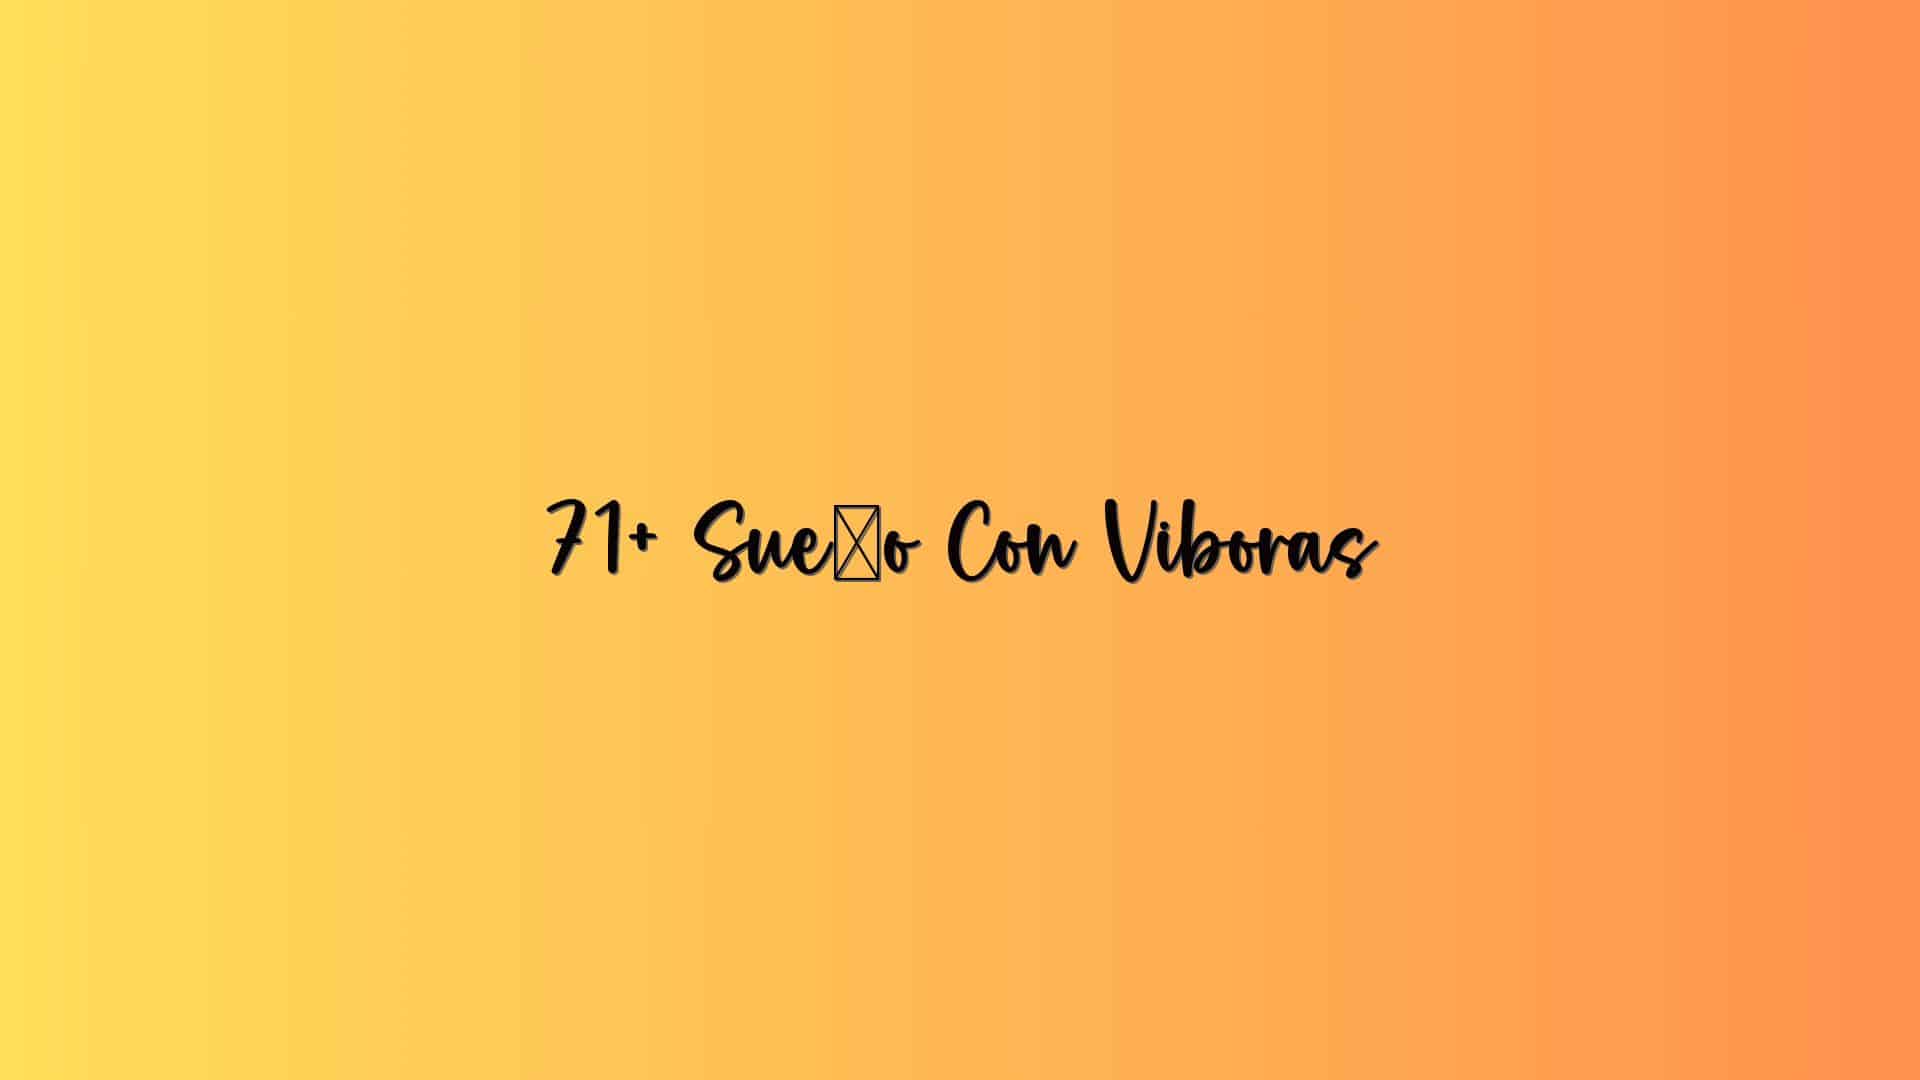 71+ Sueño Con Viboras